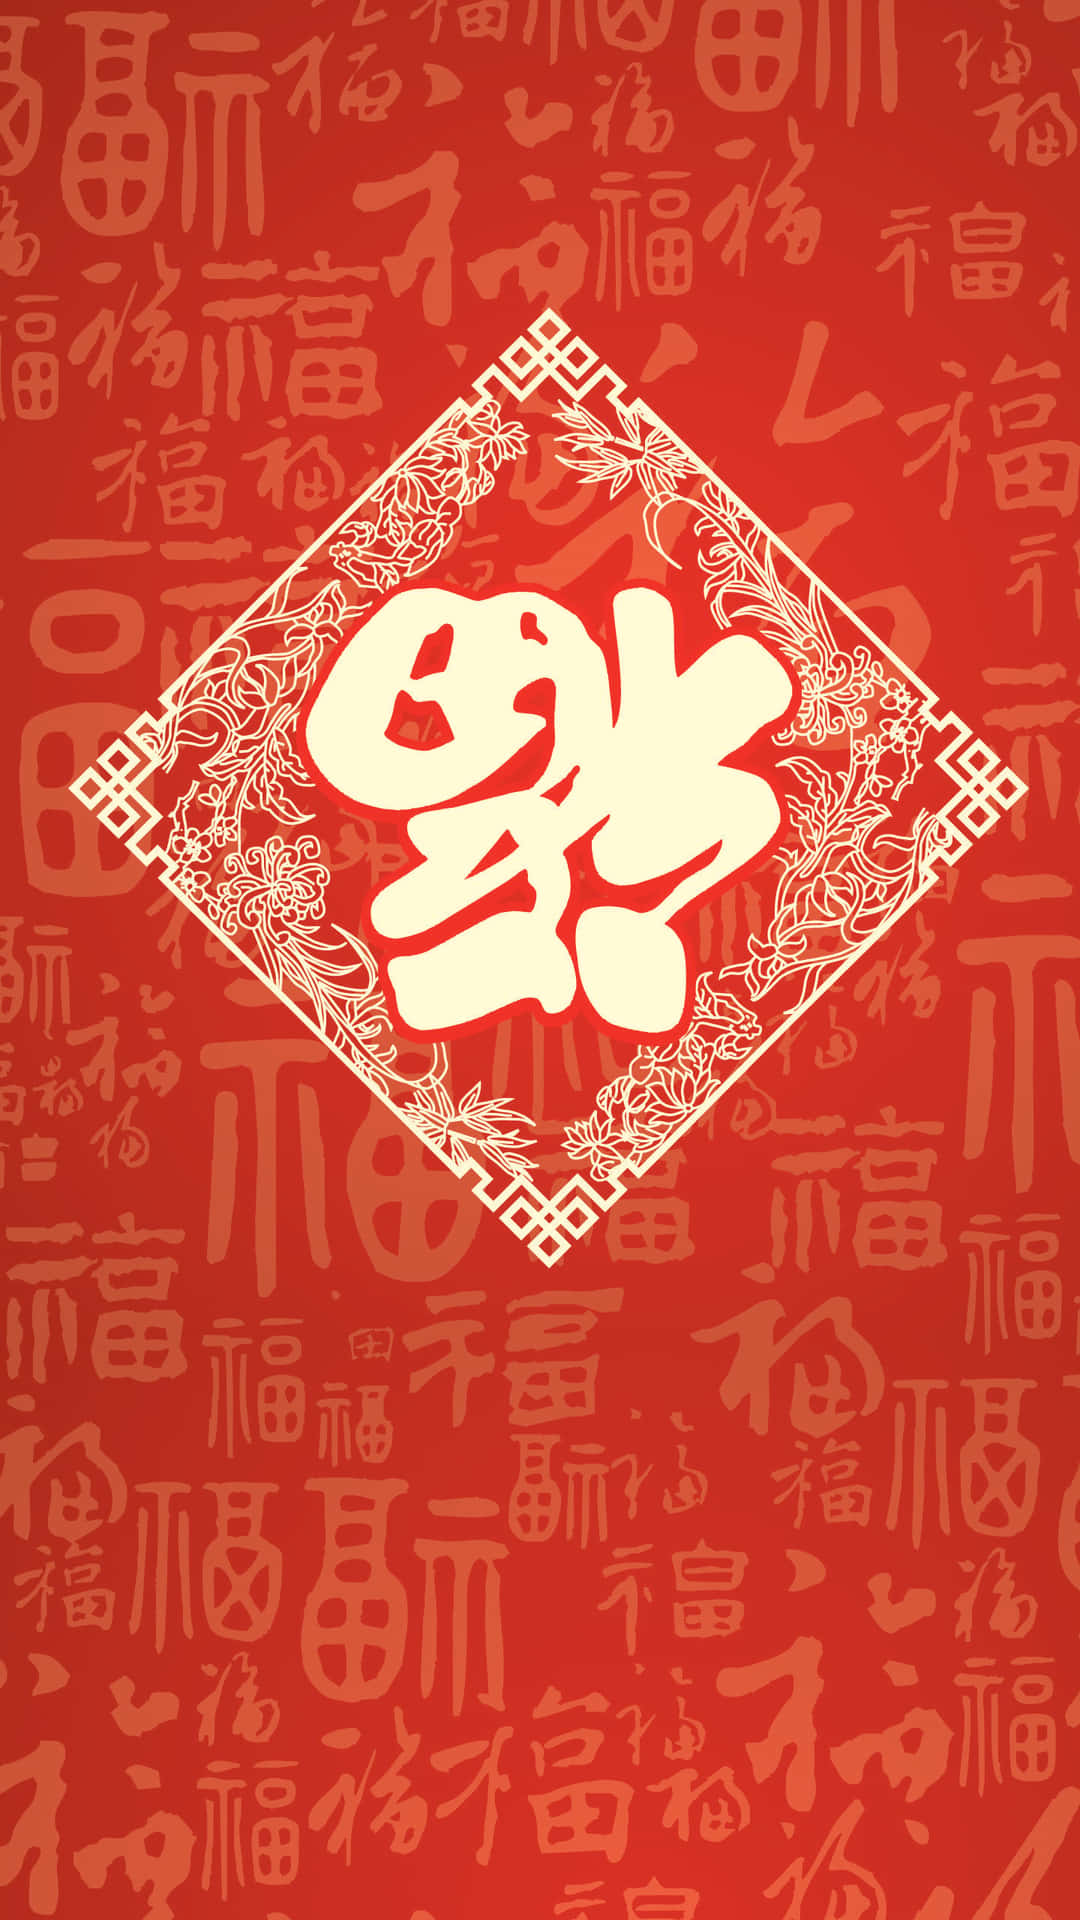 Feiernsie Das Chinesische Neujahr Mit Einem Iphone. Wallpaper